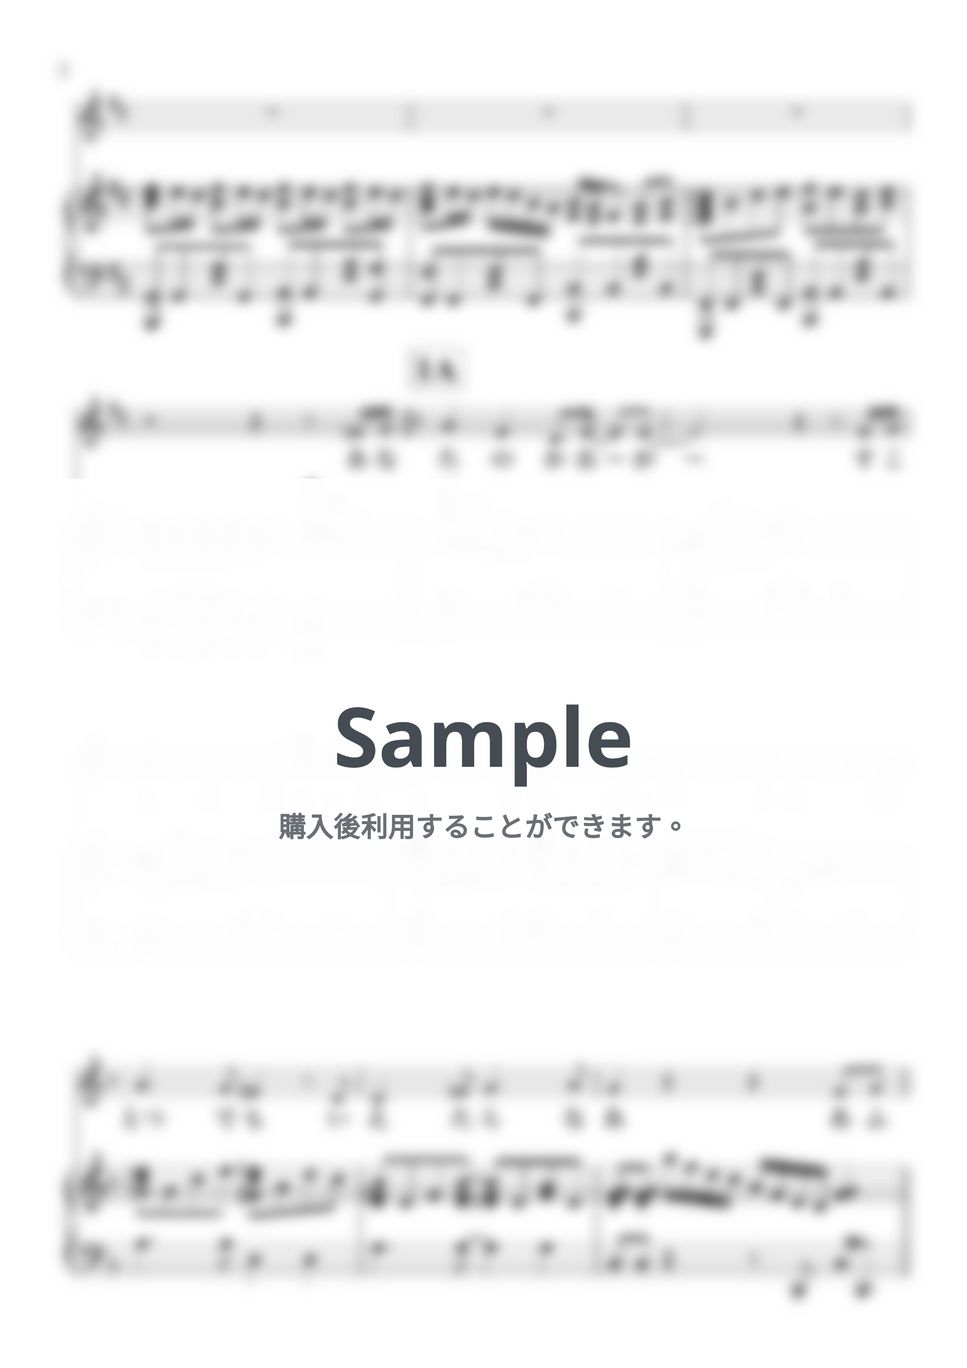 サイダーガール - シンデレラ (ピアノ弾き語り/『古見さんは、コミュ症です。』) by 鈴木 歌穂【ピアノ弾き語り】